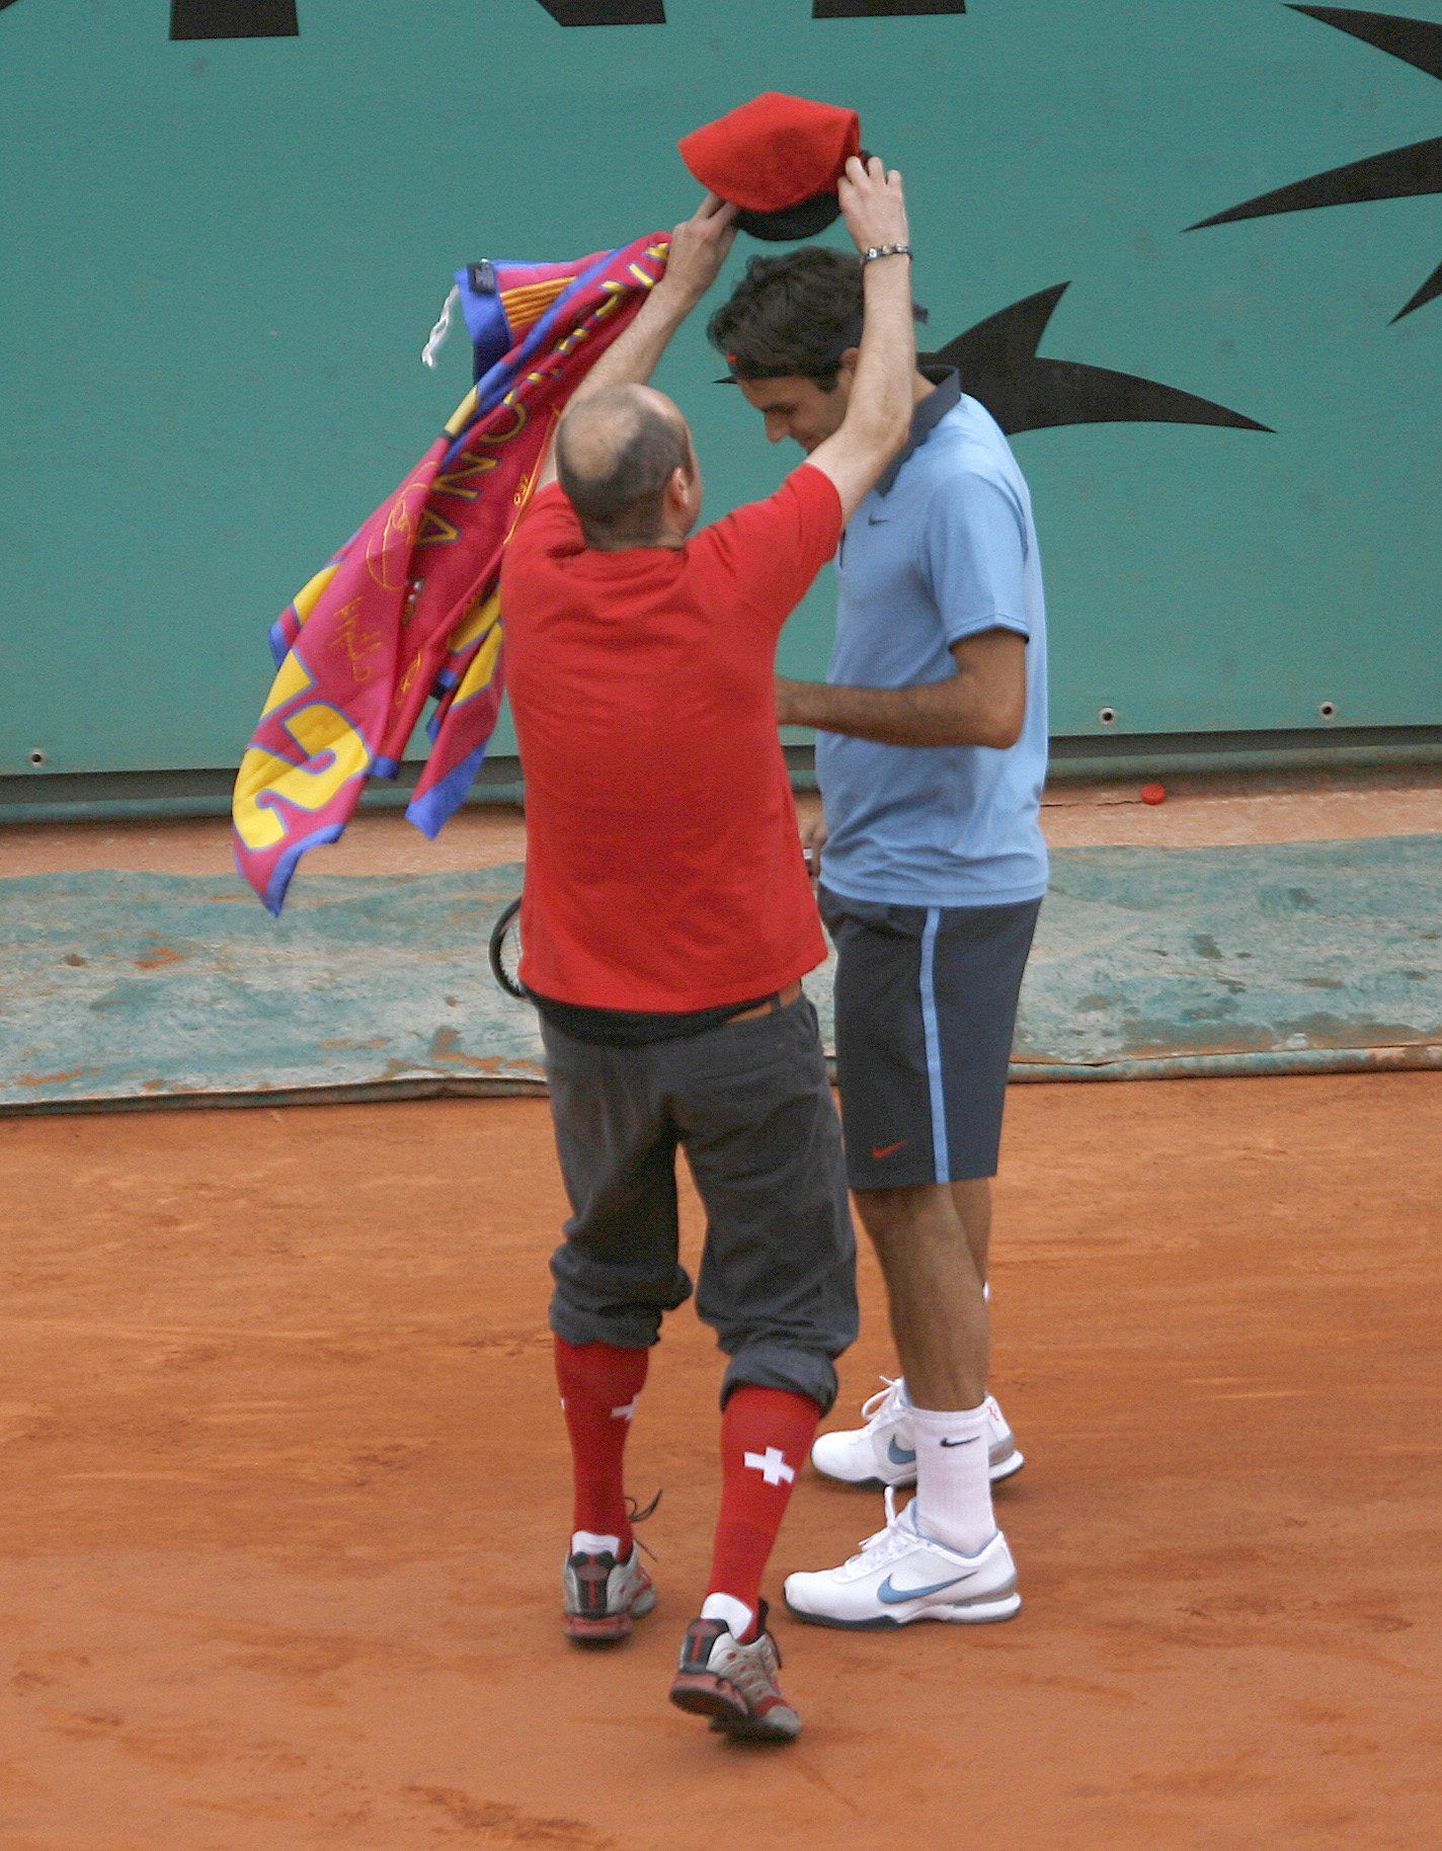 Prantsusmaa lahtiste finaalis väljakule jooksnud Jimmy Jump (vasakul) ja Roger Federer.